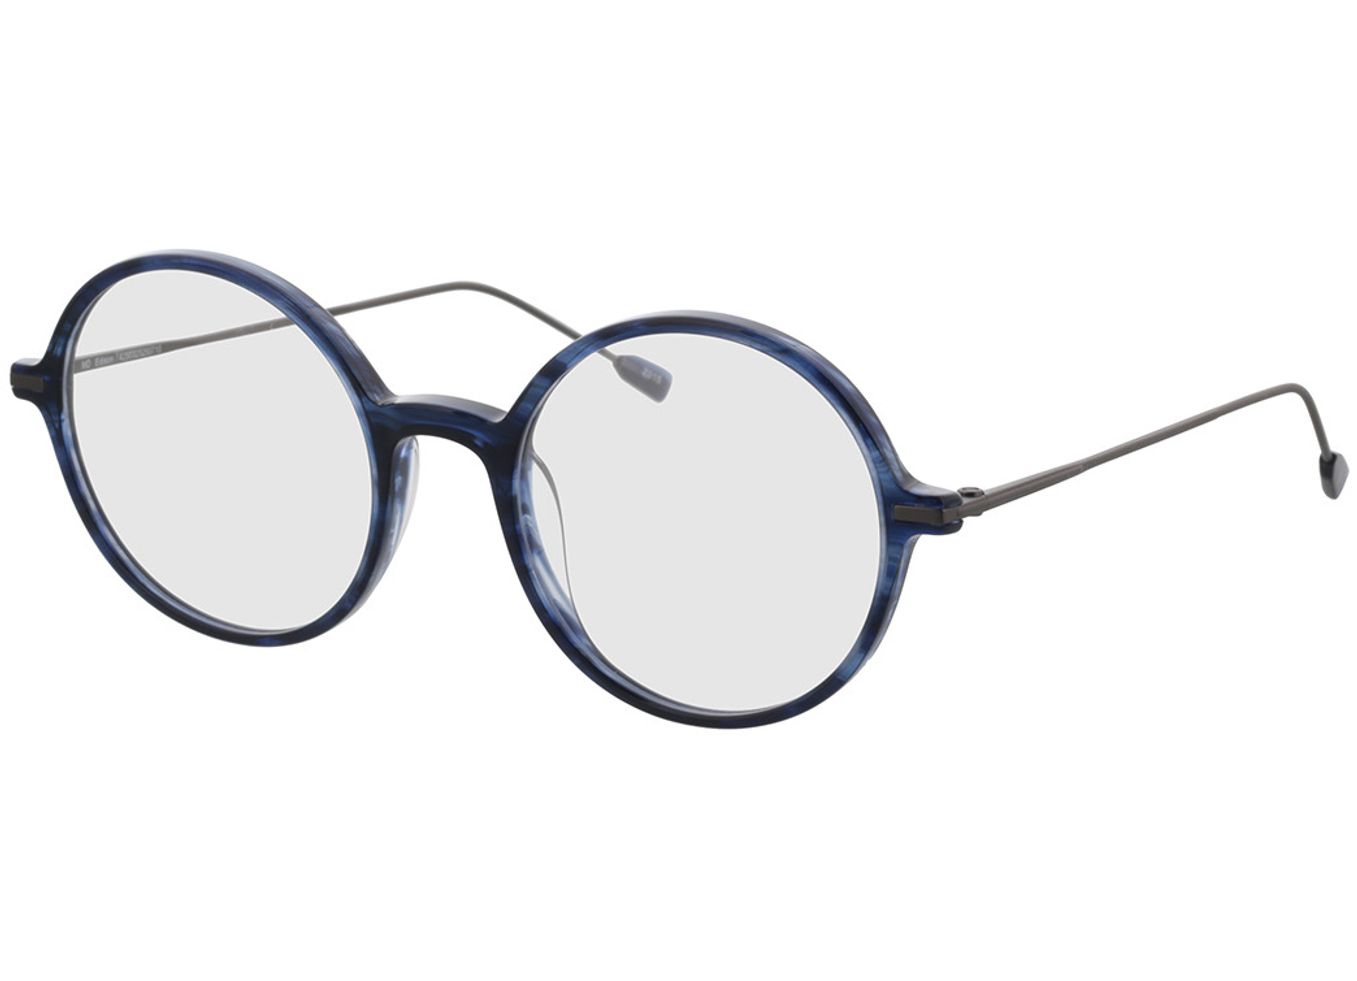 Edison - blau/anthrazit Brillengestell inkl. Gläser, Vollrand, Rund von Brille24 Collection